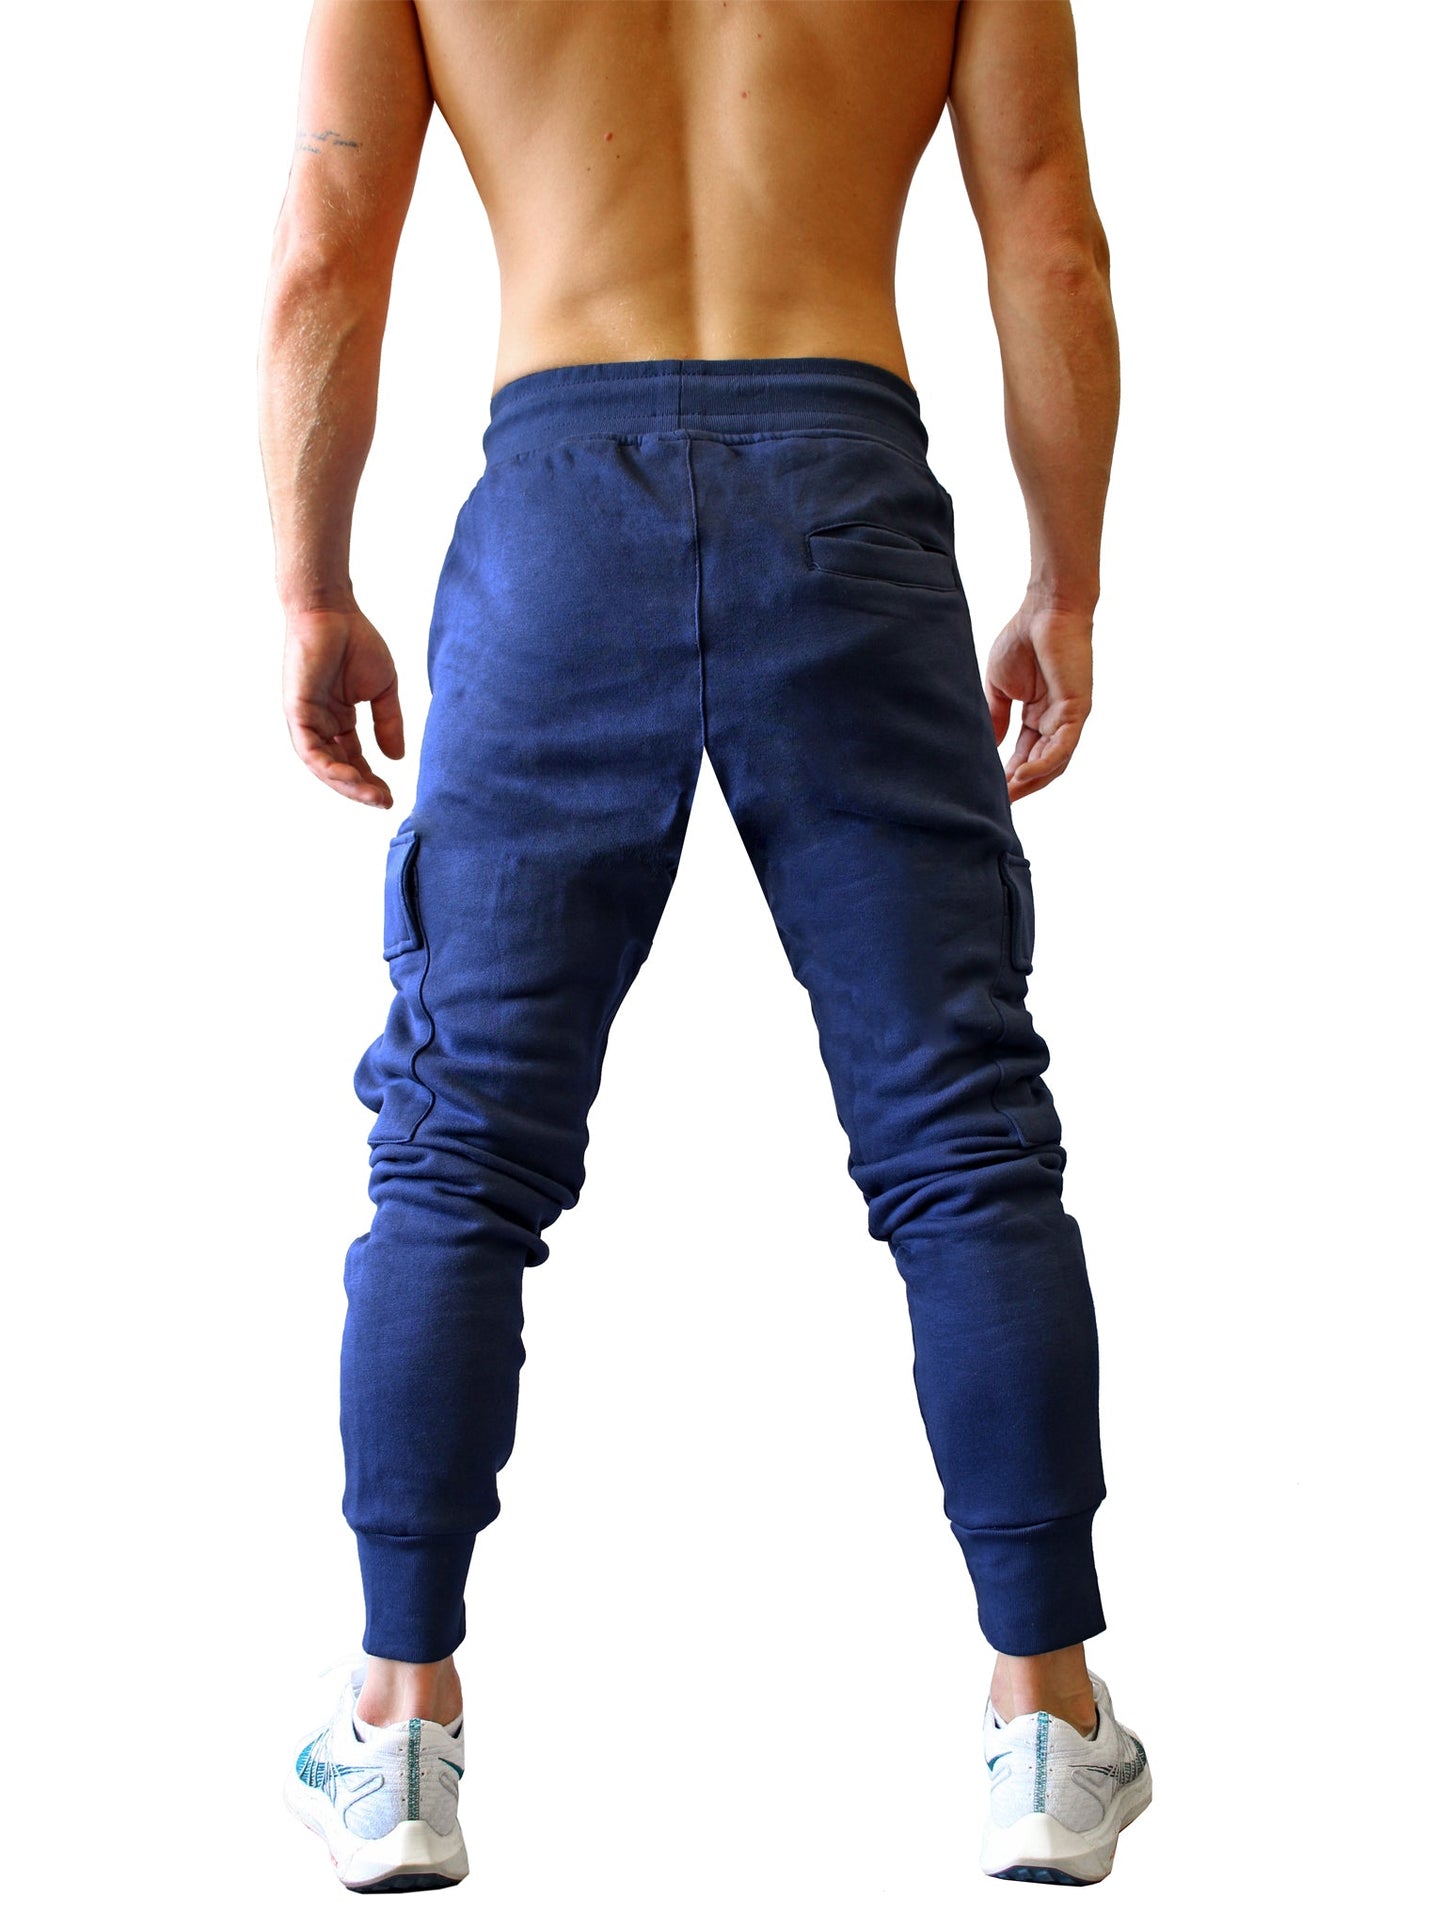 Vielseitige Navy Cargo Gym Pants von Gym Generation, ideal für Gym, Joggen oder Freizeit, kombinierbar mit verschiedenen Outfits.